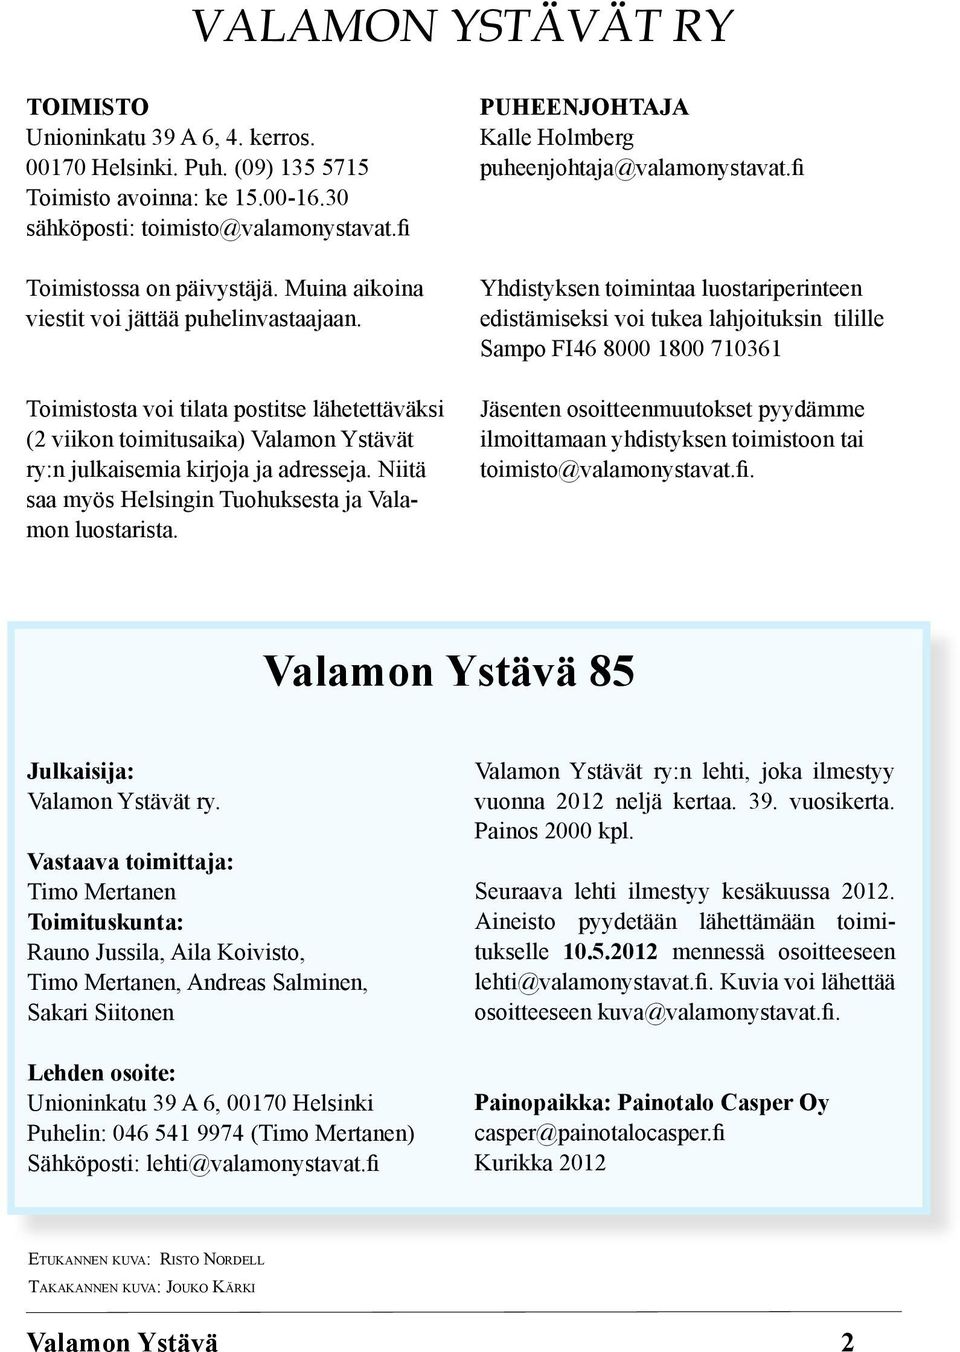 Niitä saa myös Helsingin Tuohuksesta ja Valamon luostarista. PUHEENJOHTAJA Kalle Holmberg puheenjohtaja@valamonystavat.